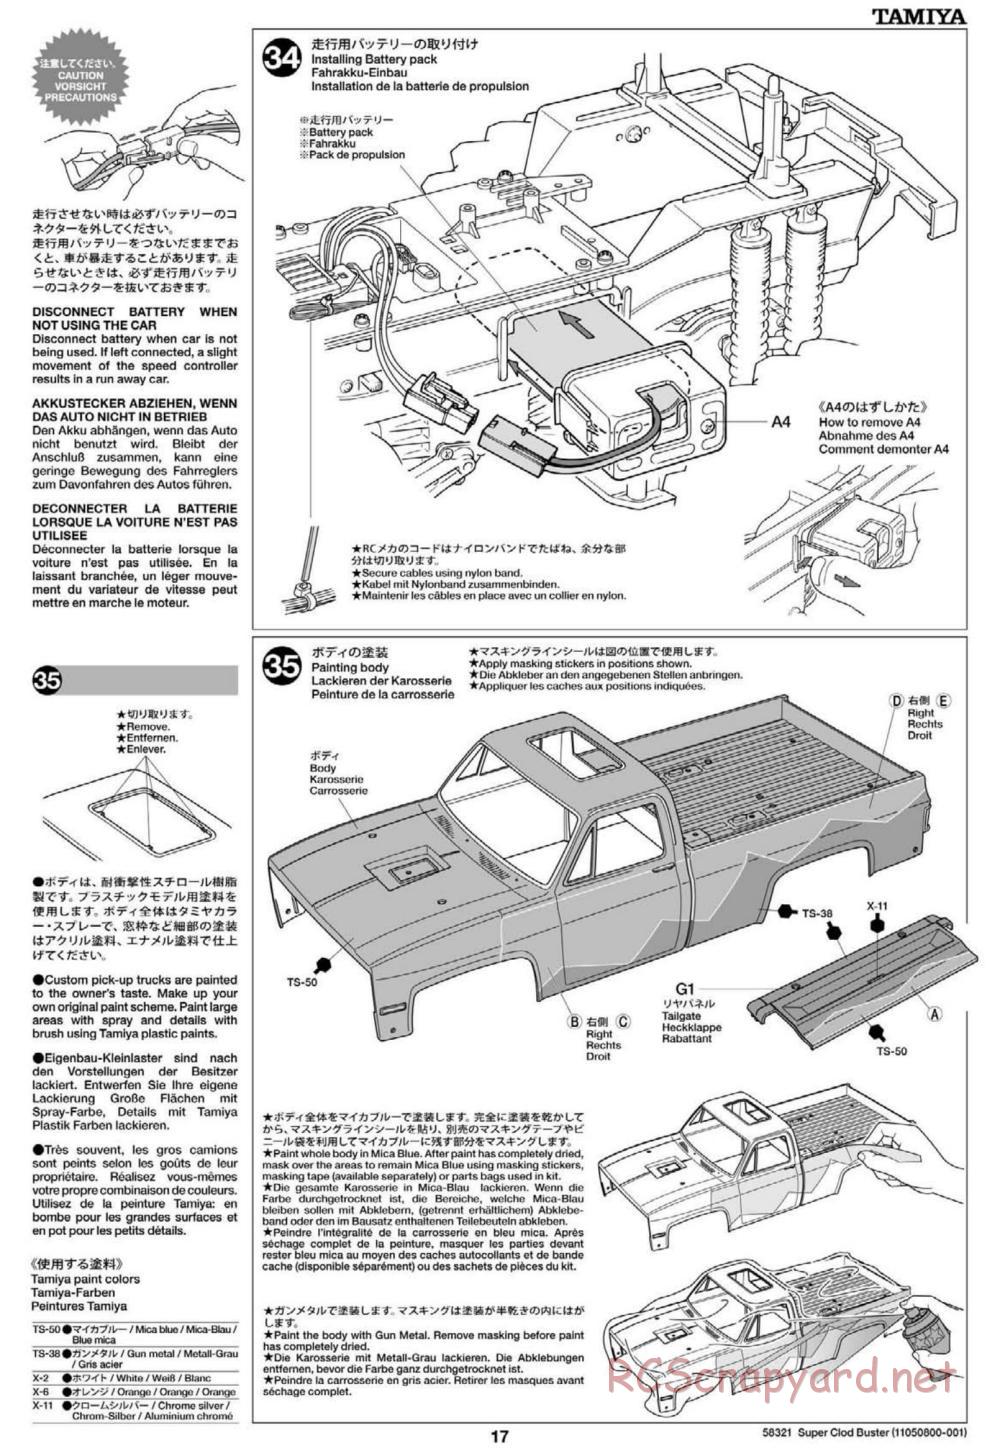 Tamiya - Super Clod Buster Chassis - Manual - Page 17